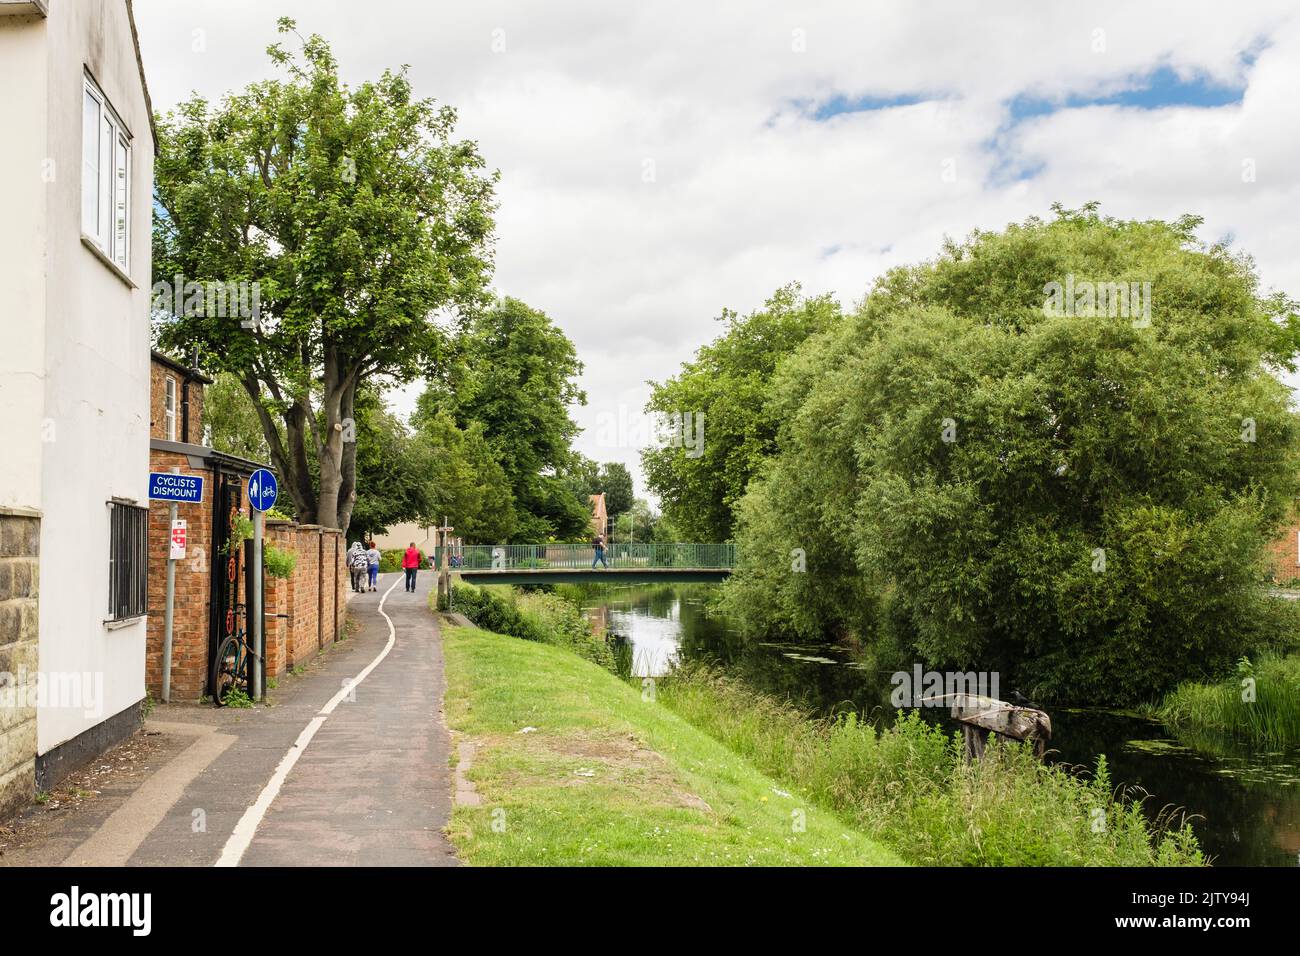 Piste cyclable et sentier de promenade le long de la rivière Welland, en bordure de la ville, en été. Spalding, Lincolnshire, Angleterre, Royaume-Uni, Grande-Bretagne Banque D'Images